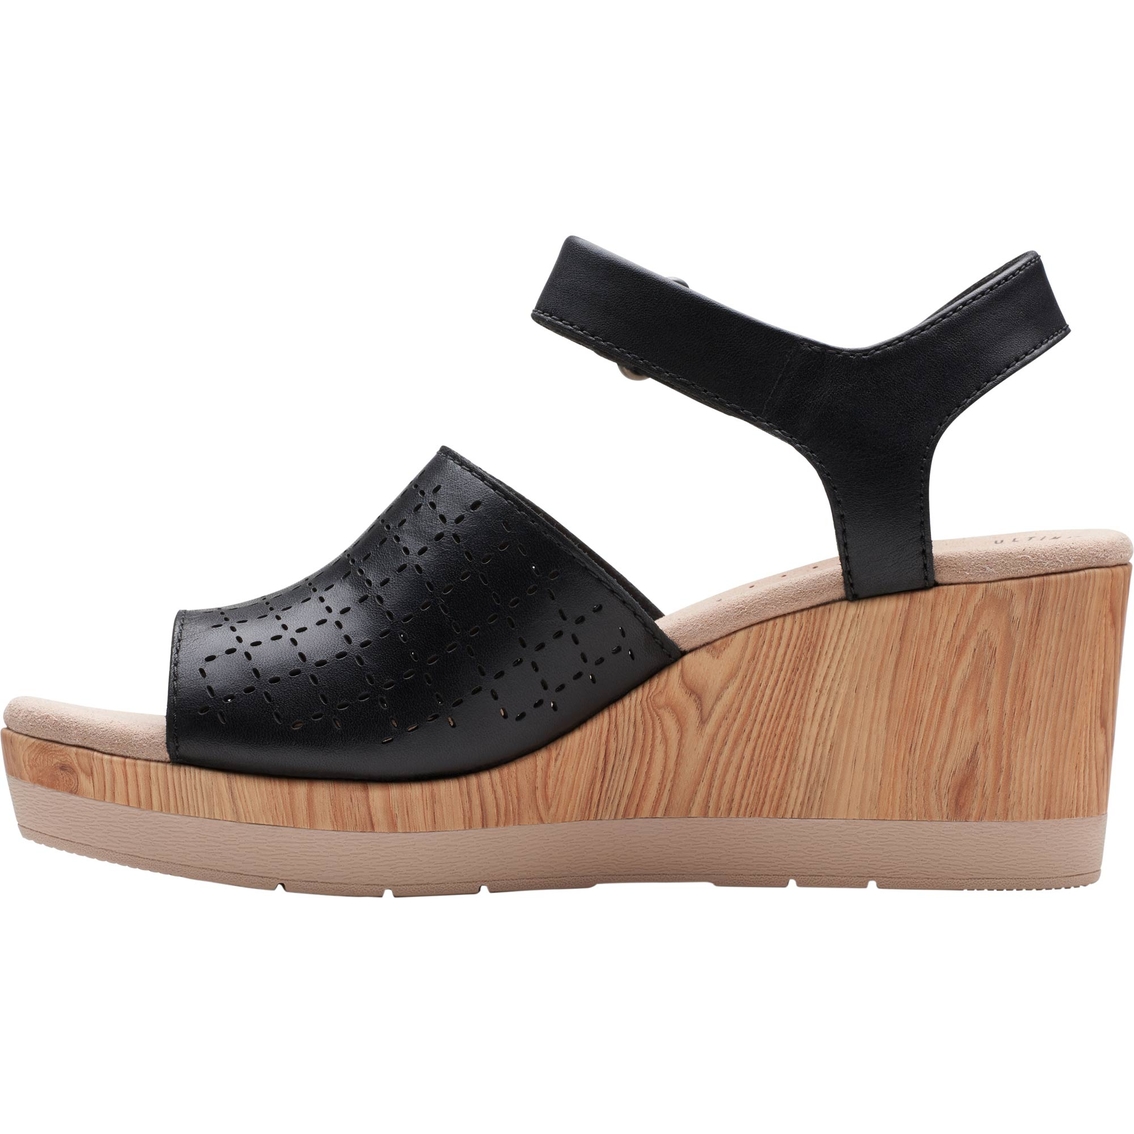 Clarks Women's Cammy Glory Quarter Strap Sandals Sandals | Shoes | Shop The Exchange